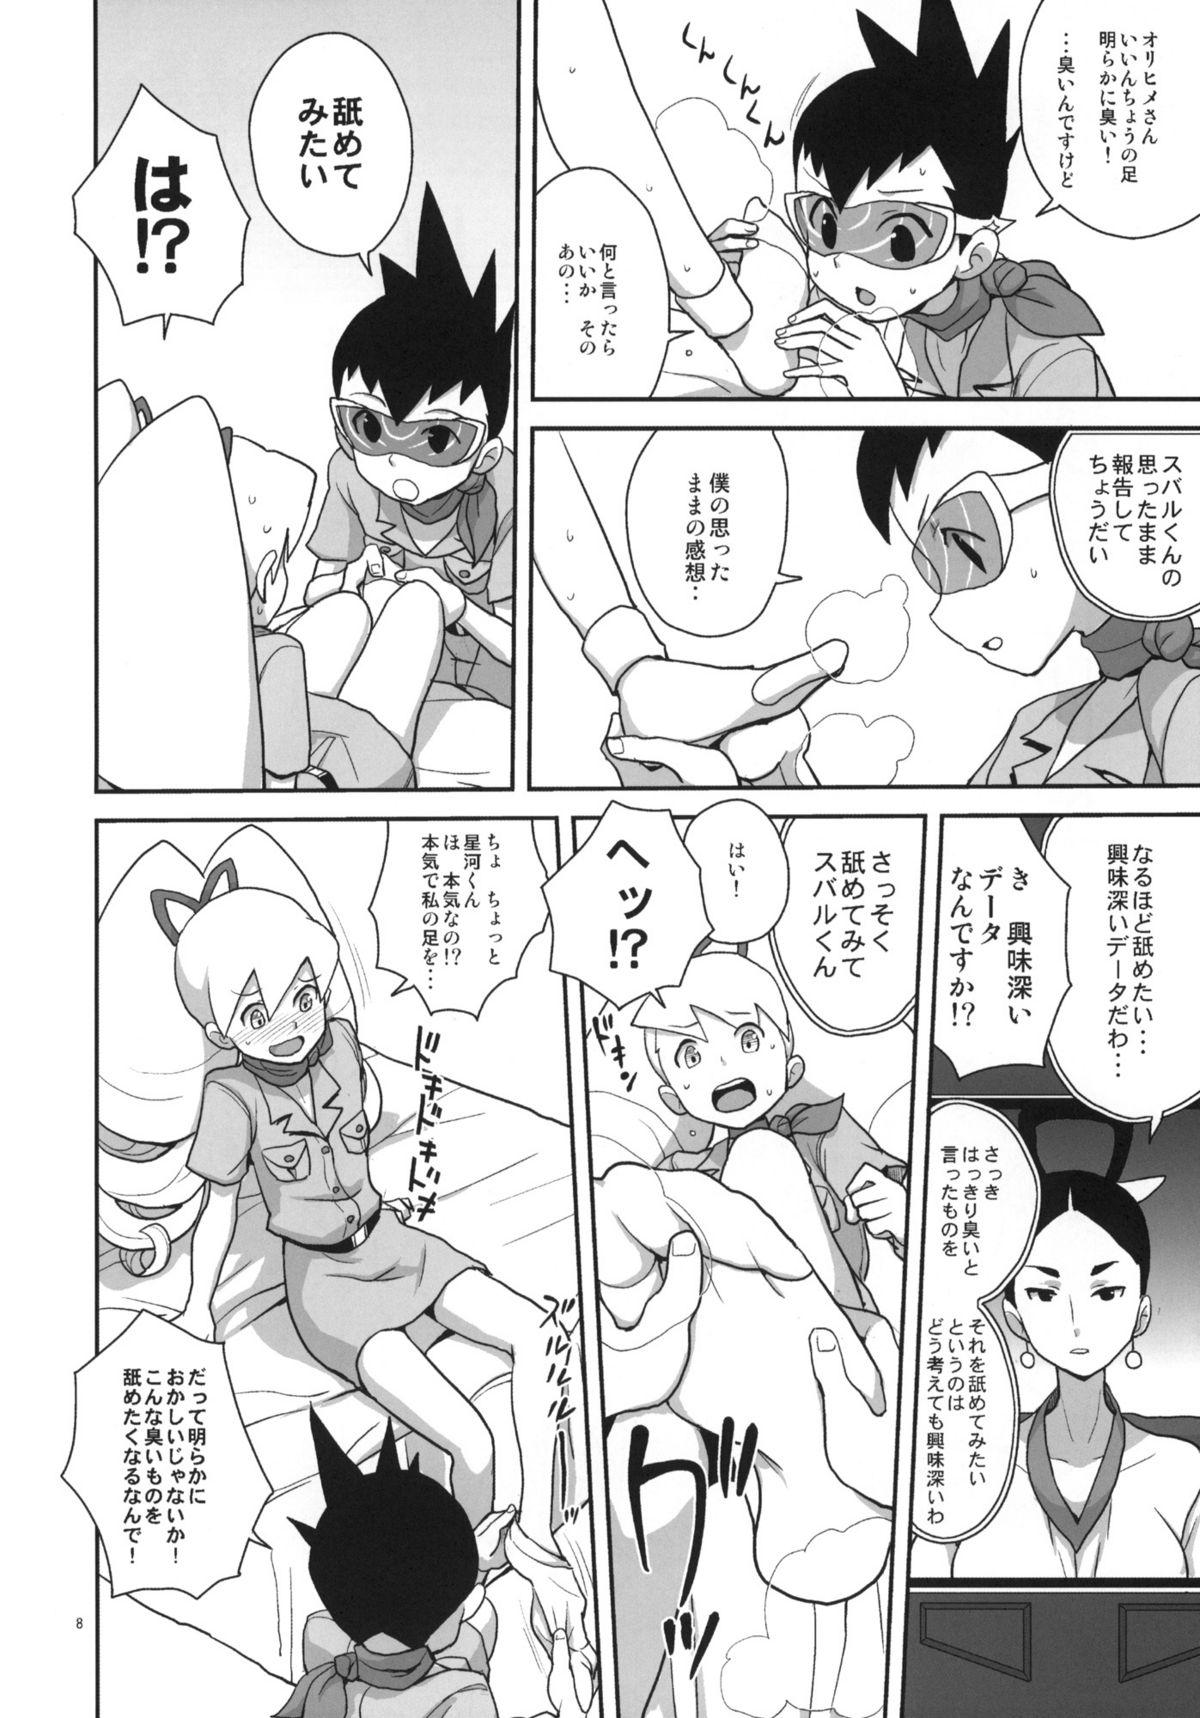 Roundass Ameroppa no Hikyou ni Densetsu no Ooparts wo Mita! - Megaman Mega man star force Cumming - Page 7